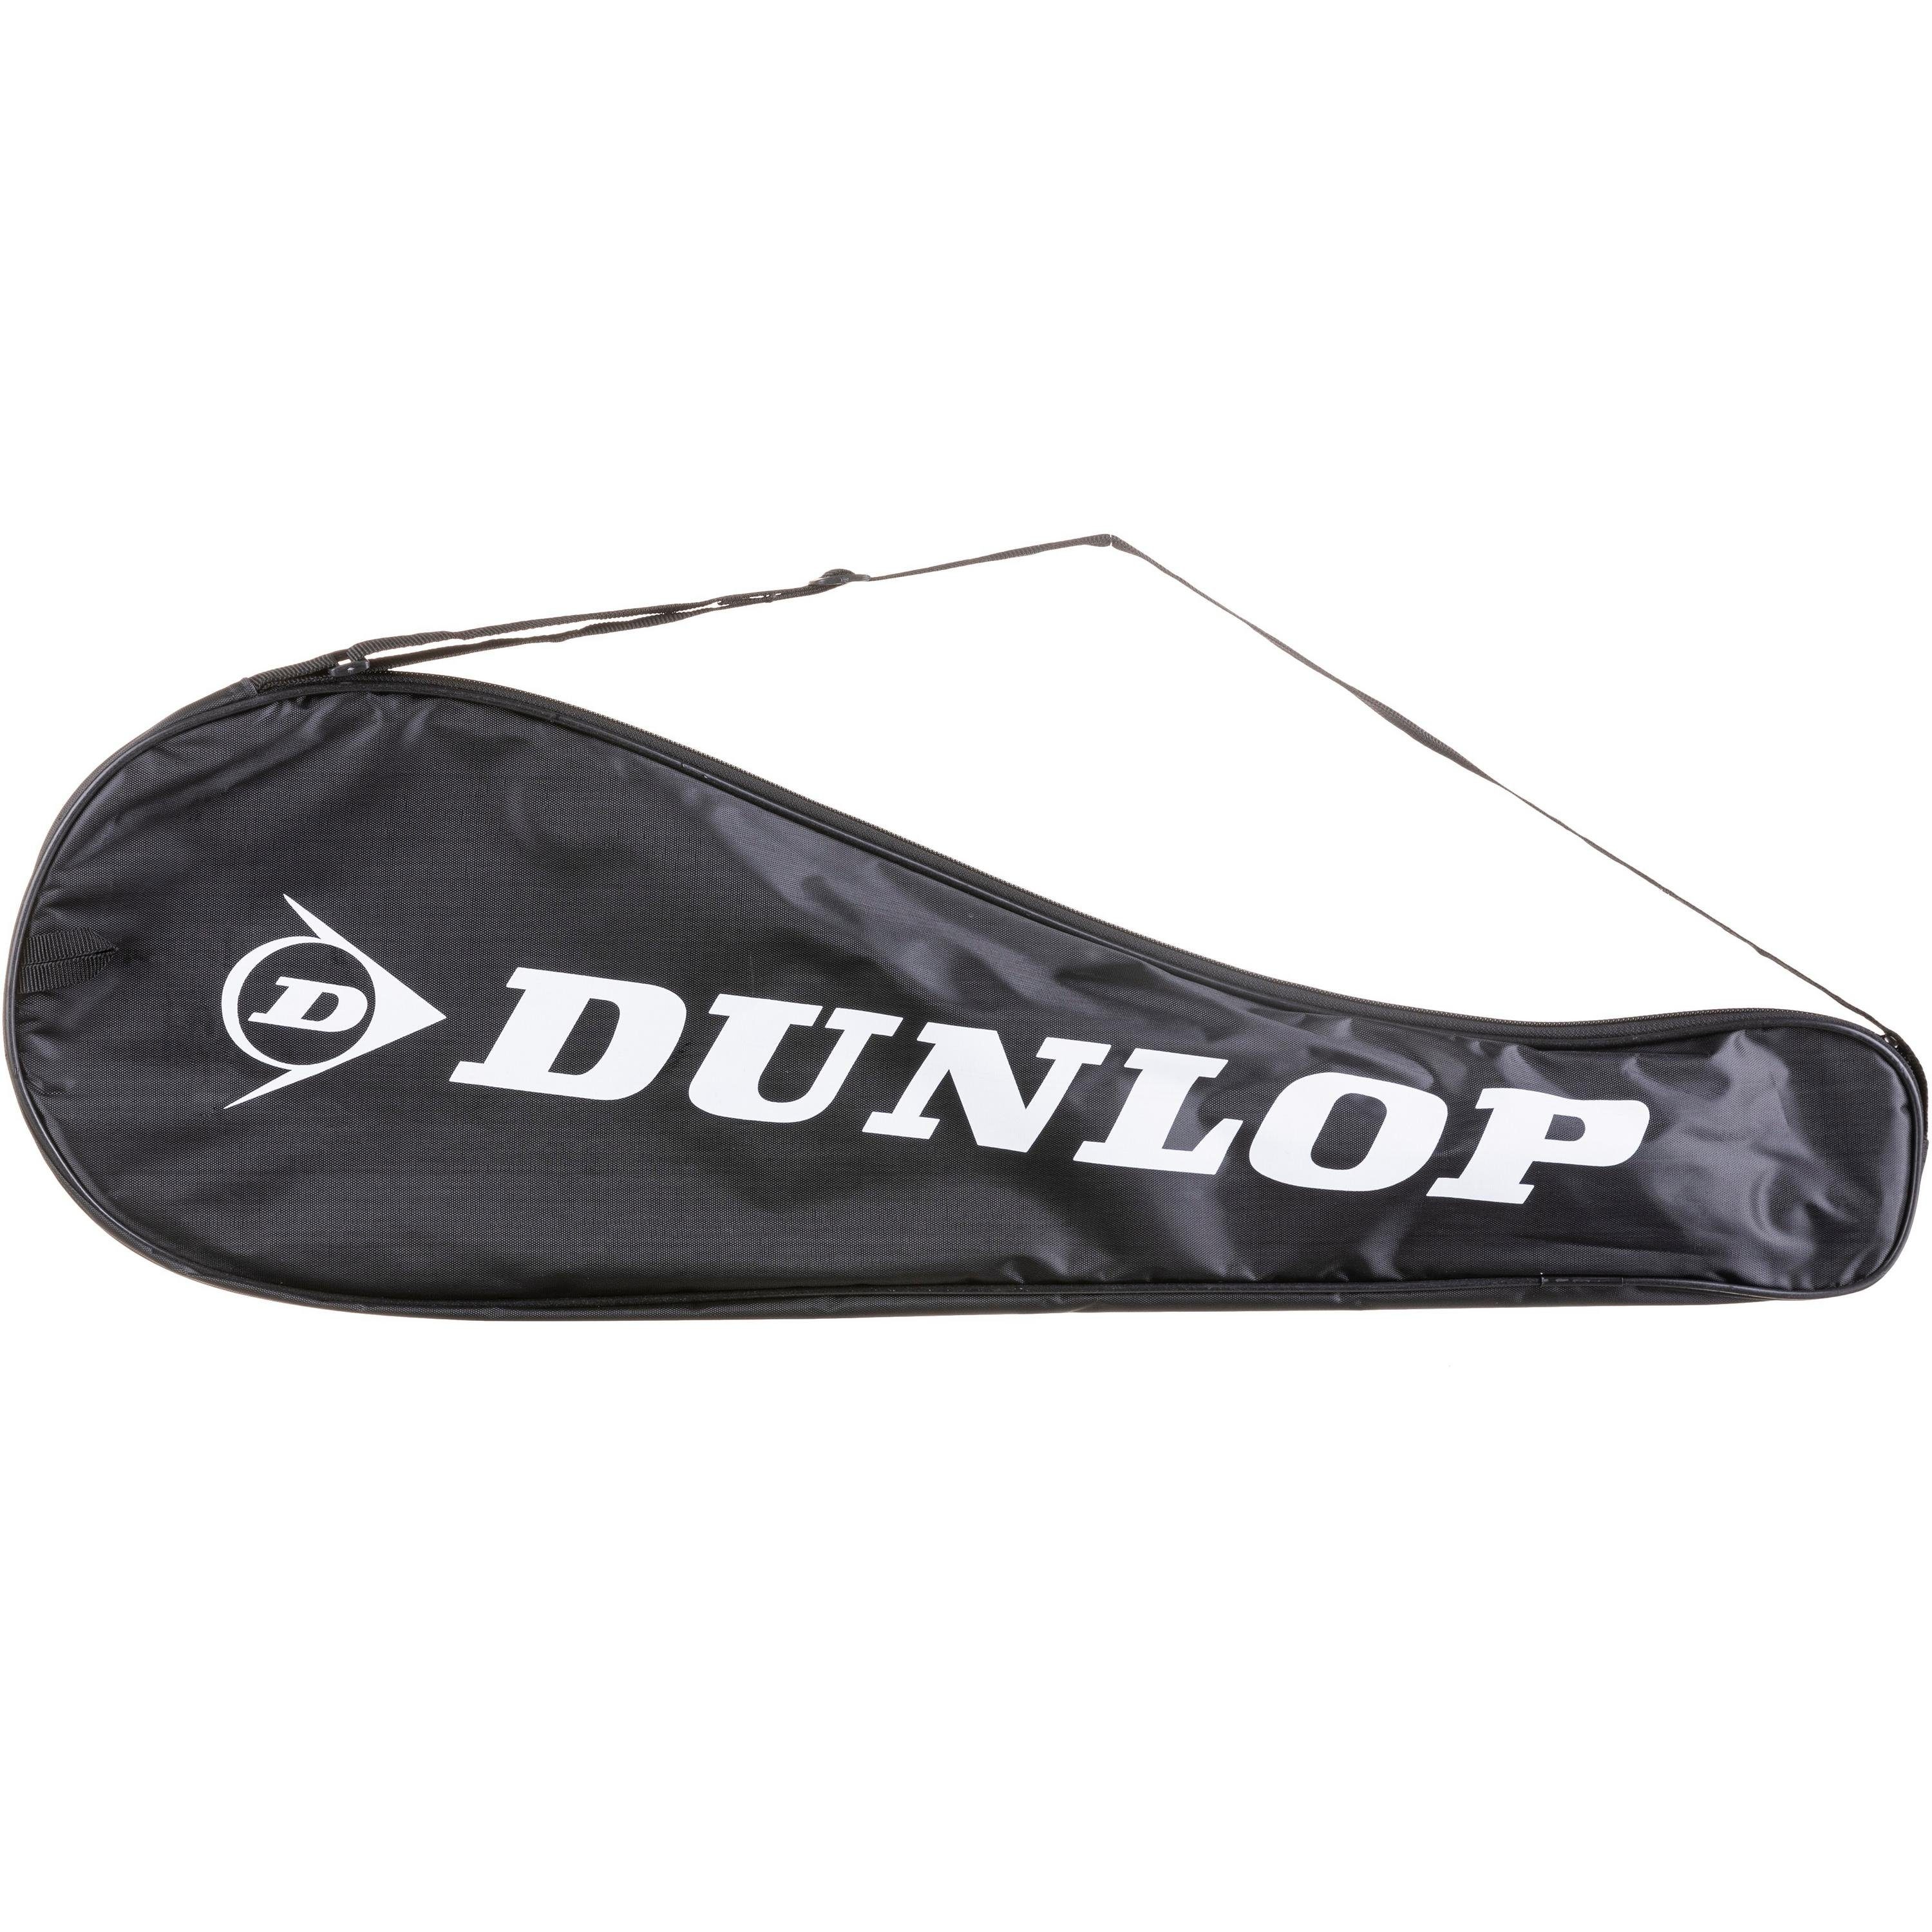 STAR FS1000 Badmintonschläger Dunlop NITRO